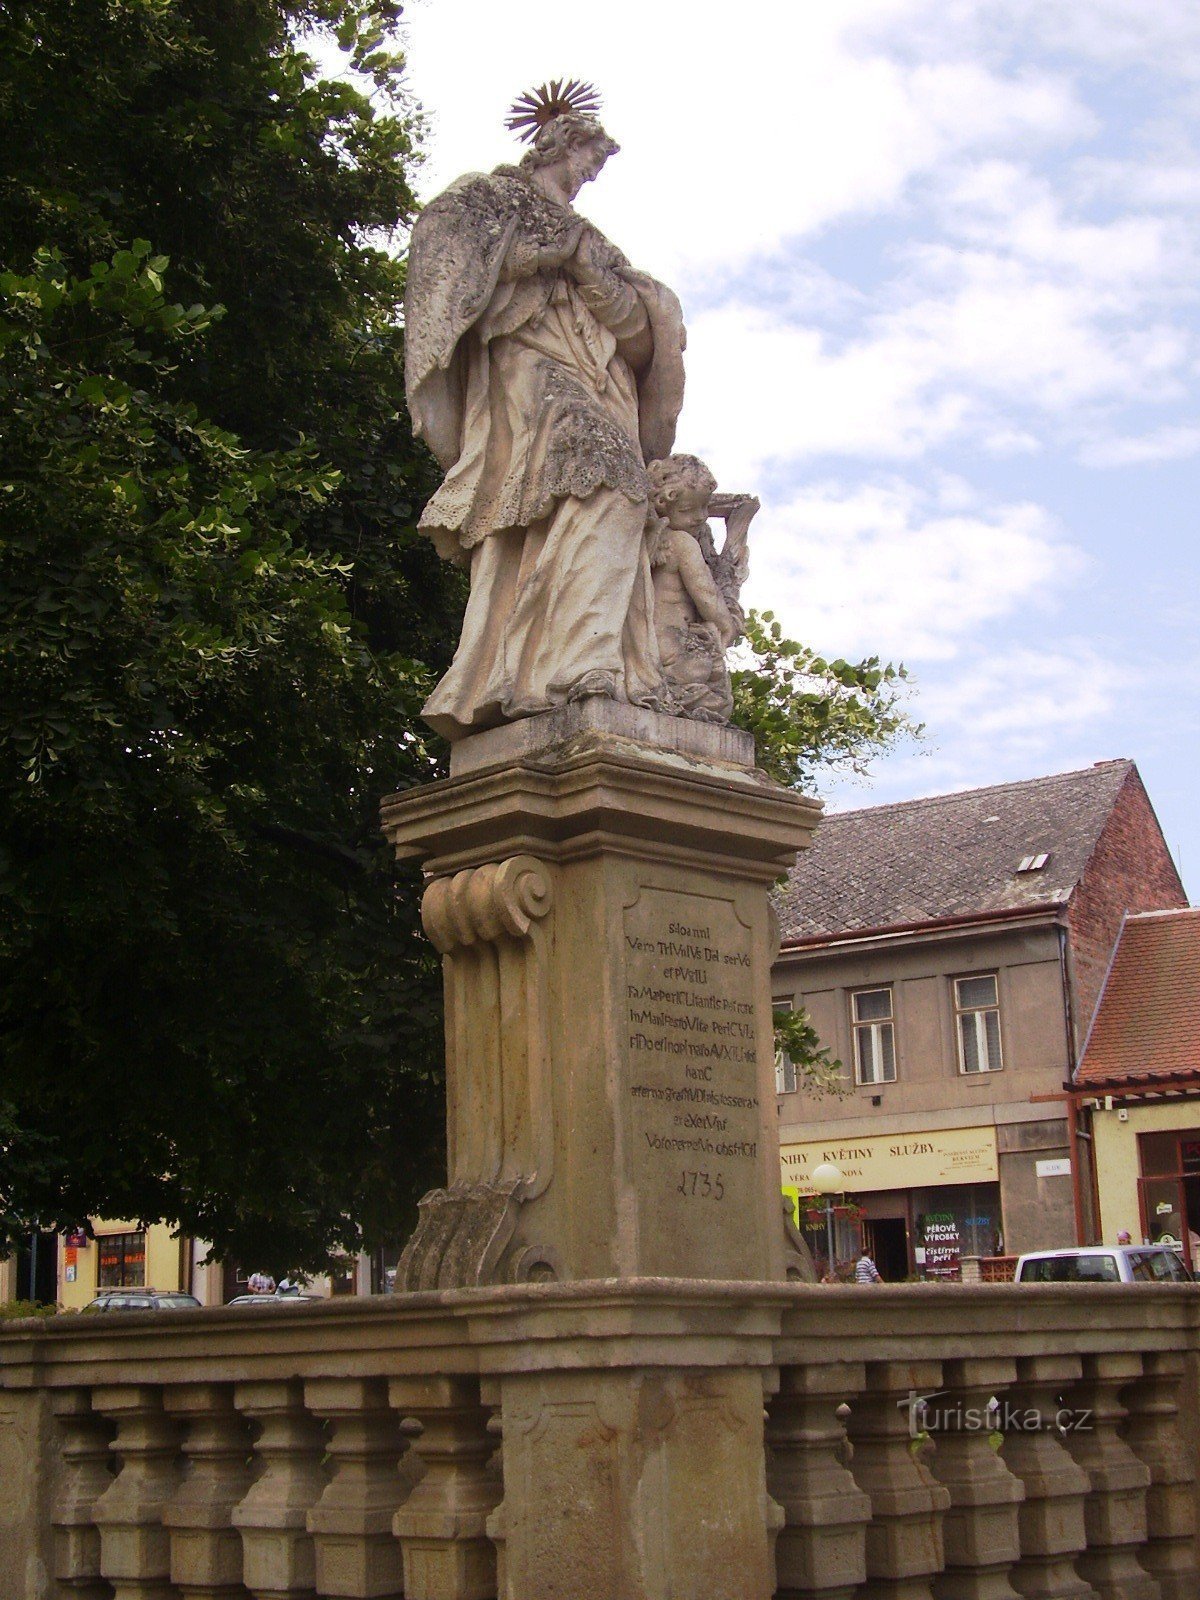 St. John's statues in Dolní Kounice